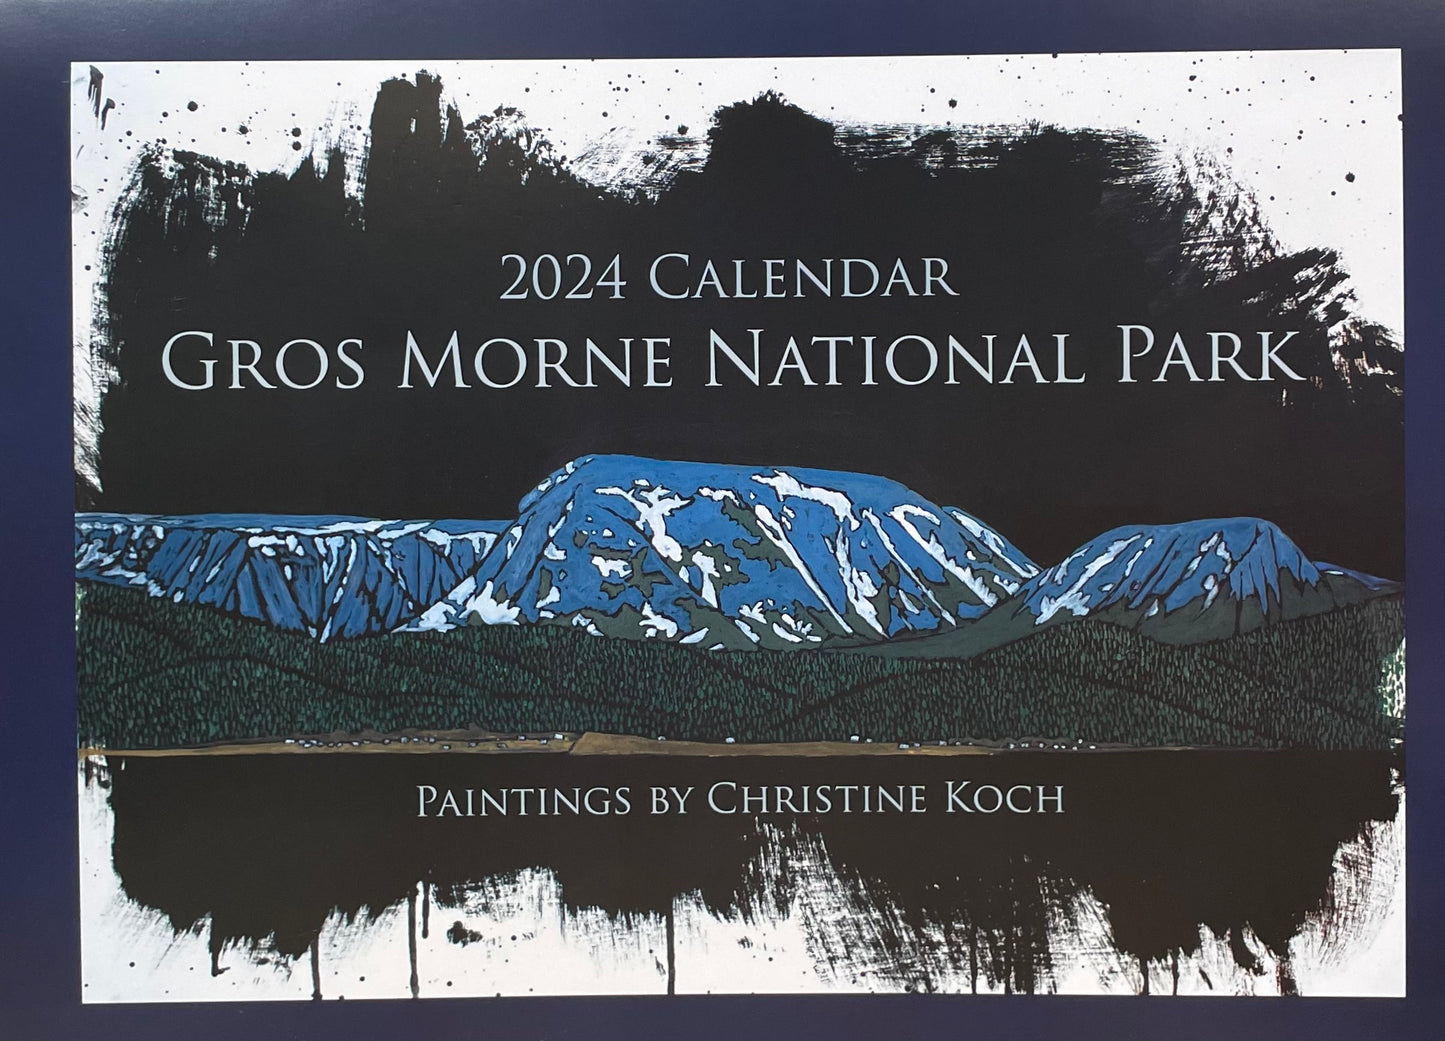 Gros Morne National Park 2024 Calendar - Paintings by Christine Koch